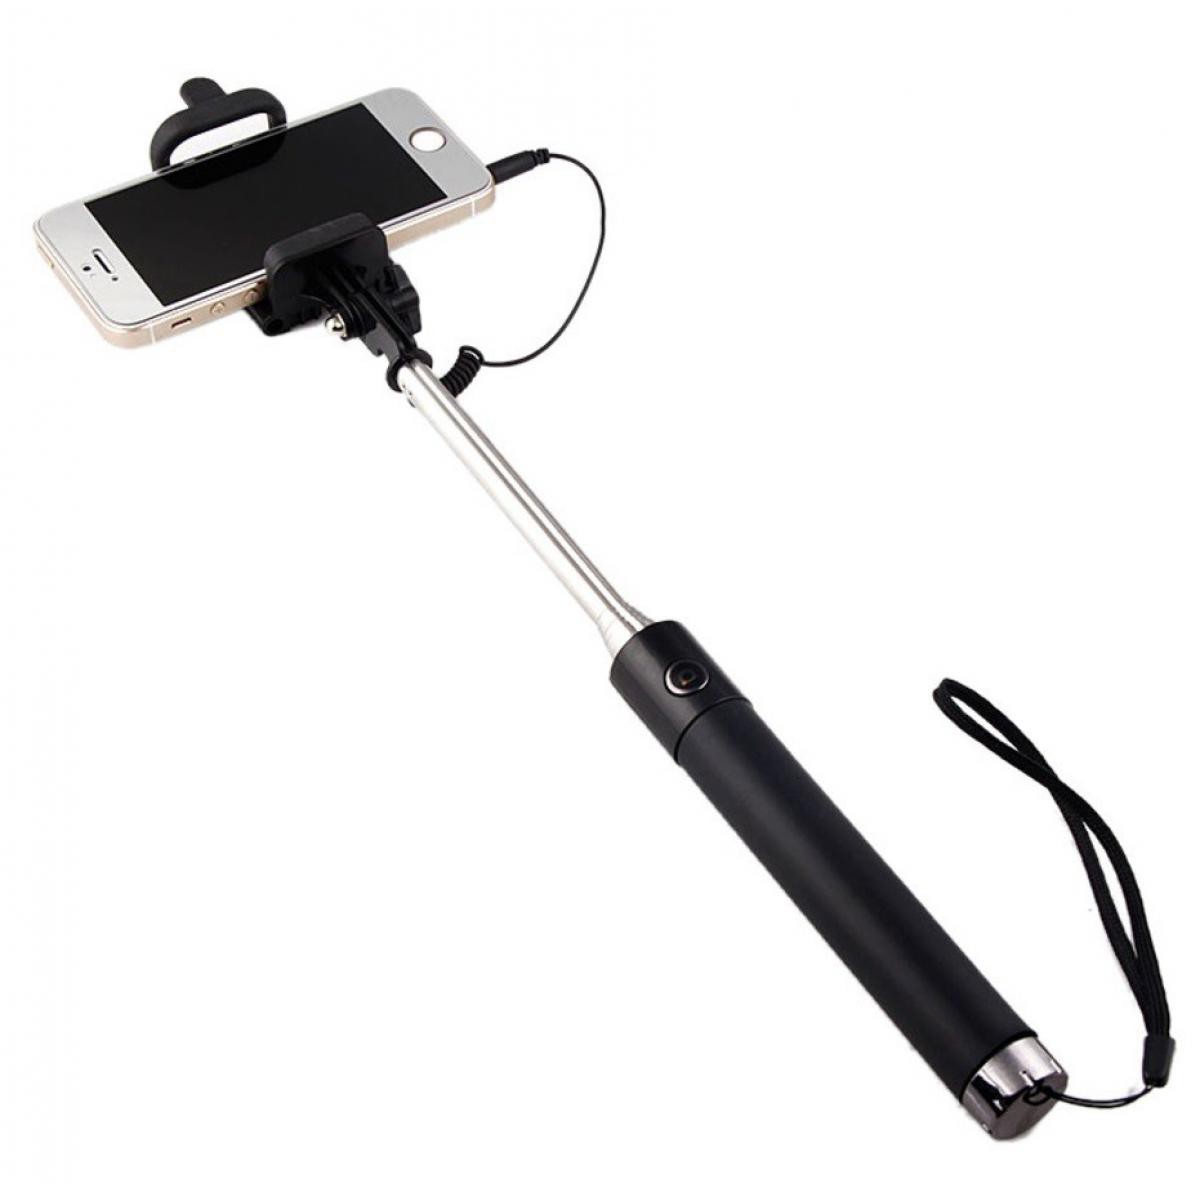 Shot - Selfie Stick Metal pour XIAOMI Redmi 7A Smartphone Perche Android IOS Reglable Bouton Photo Cable Jack Noir - Autres accessoires smartphone